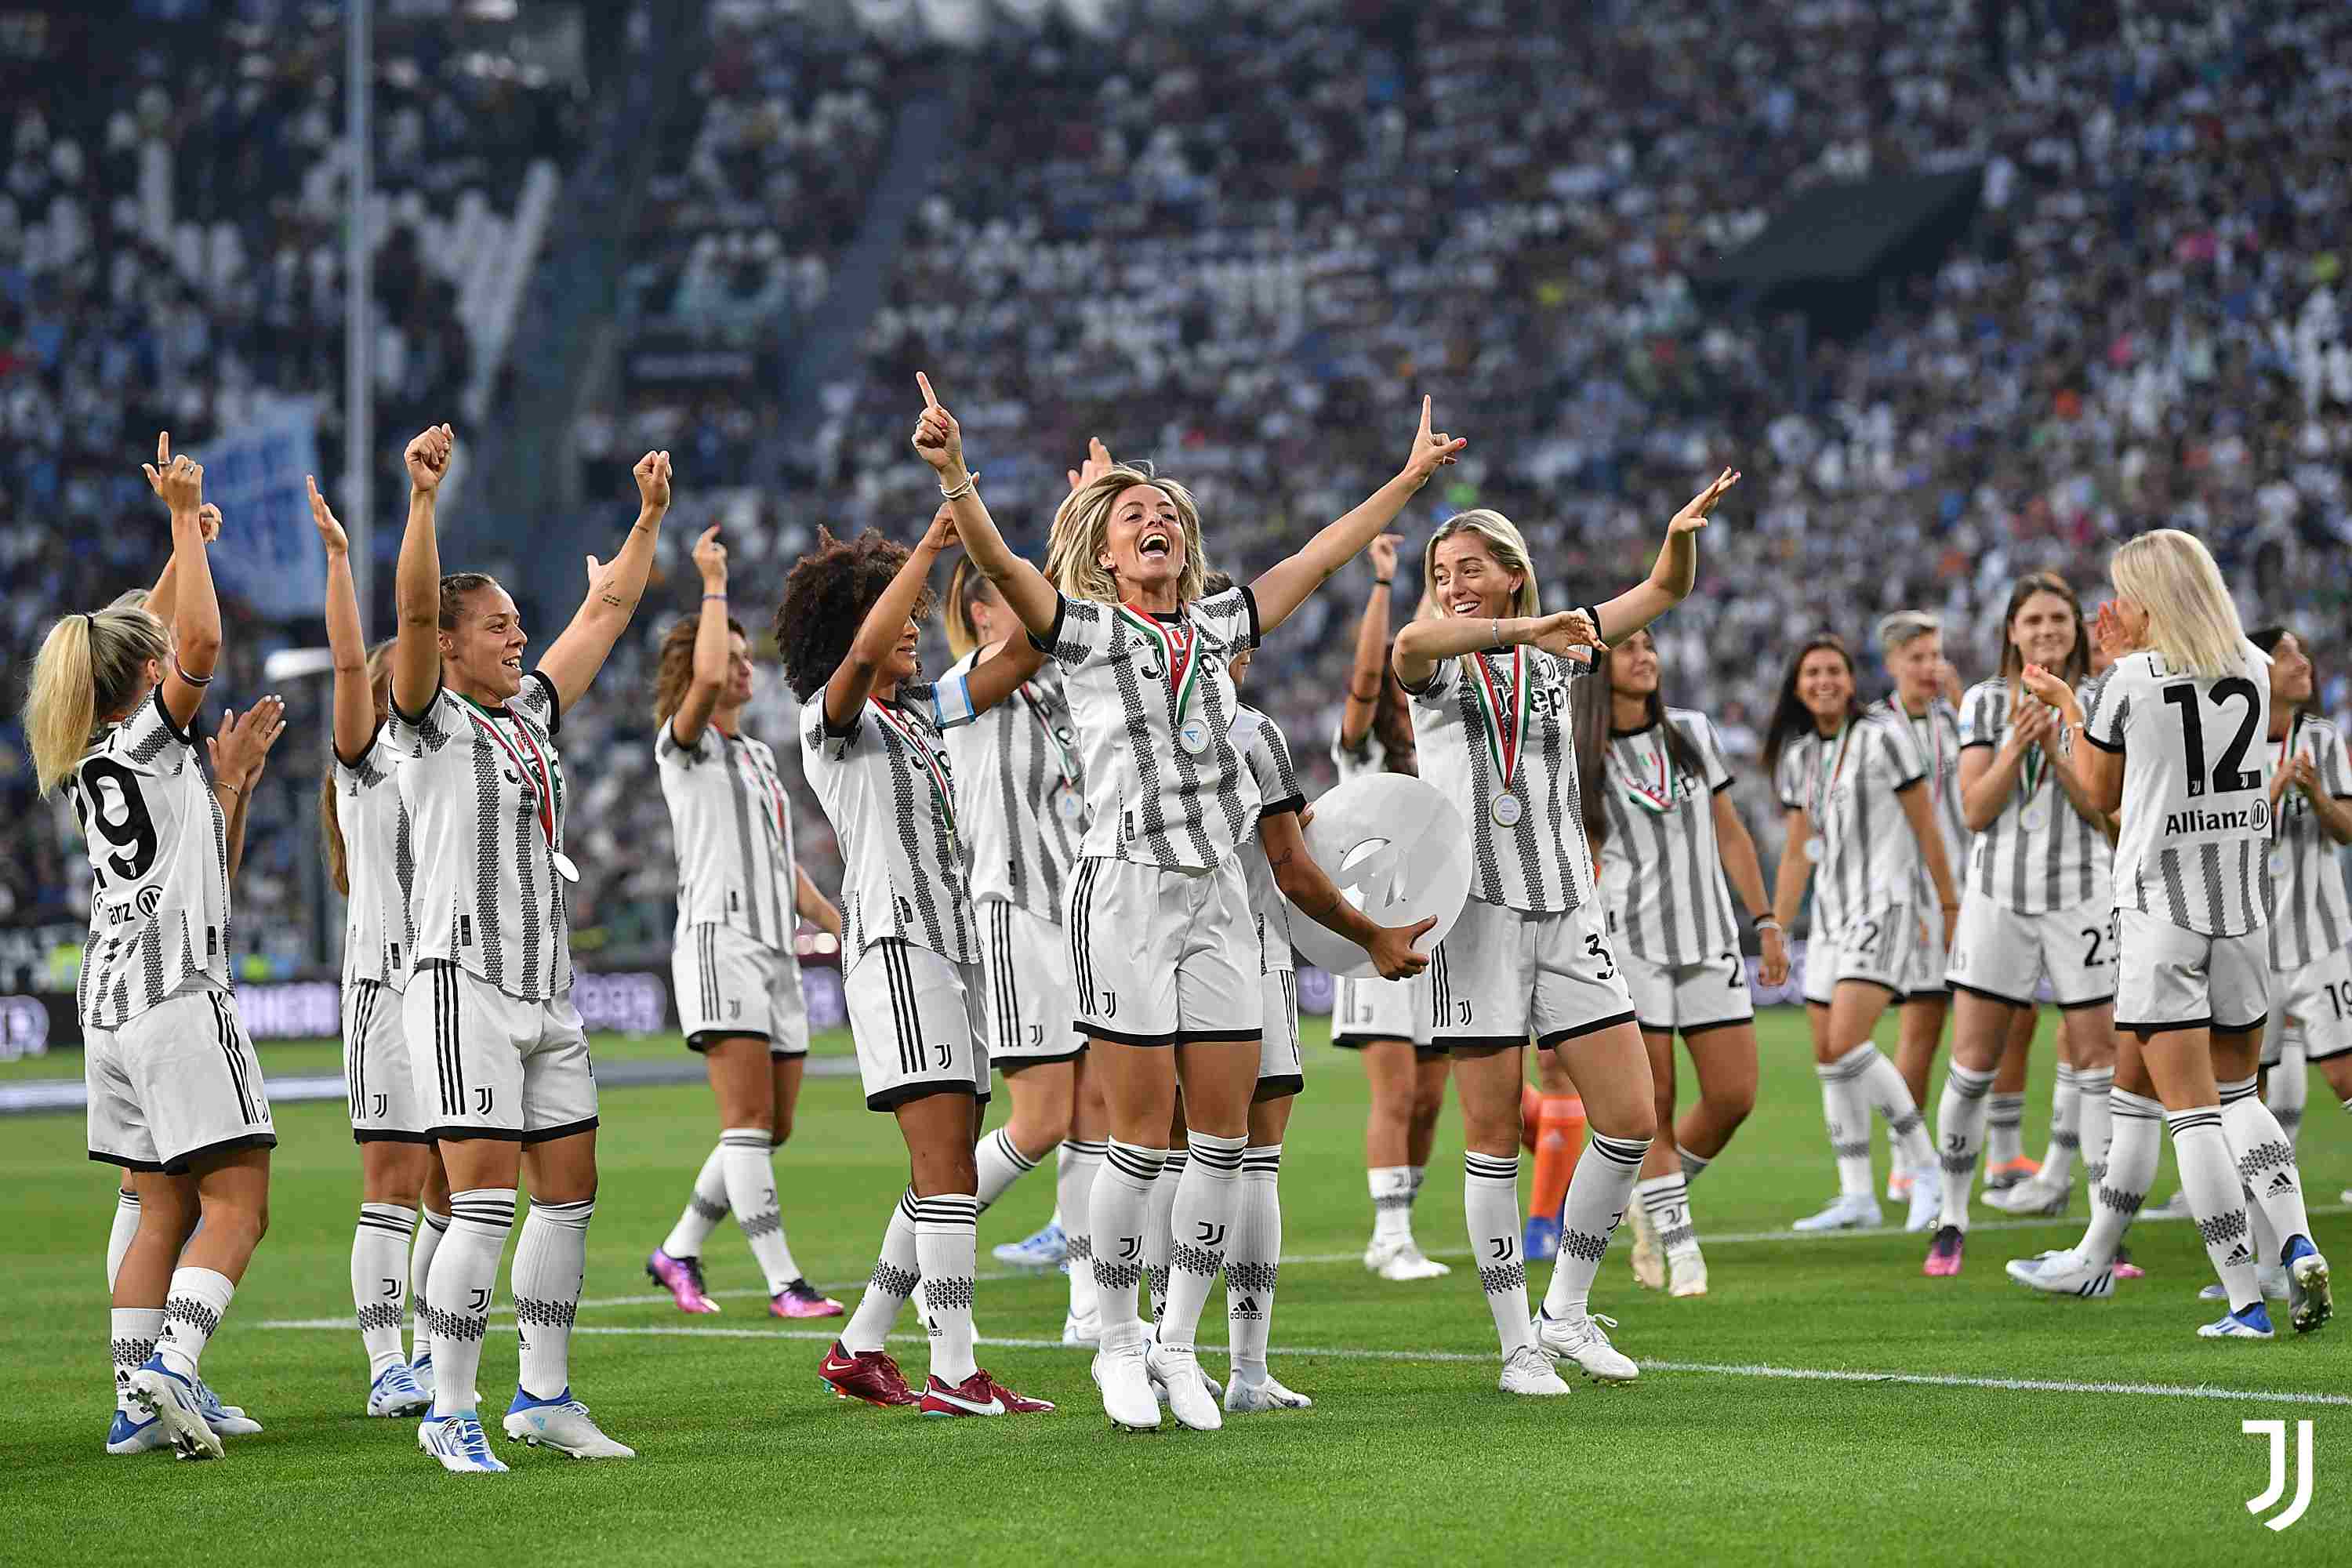 От трех девушек и шлепанцев, до пяти титулов подряд: как «Ювентус» изменил женский футбол в Италии